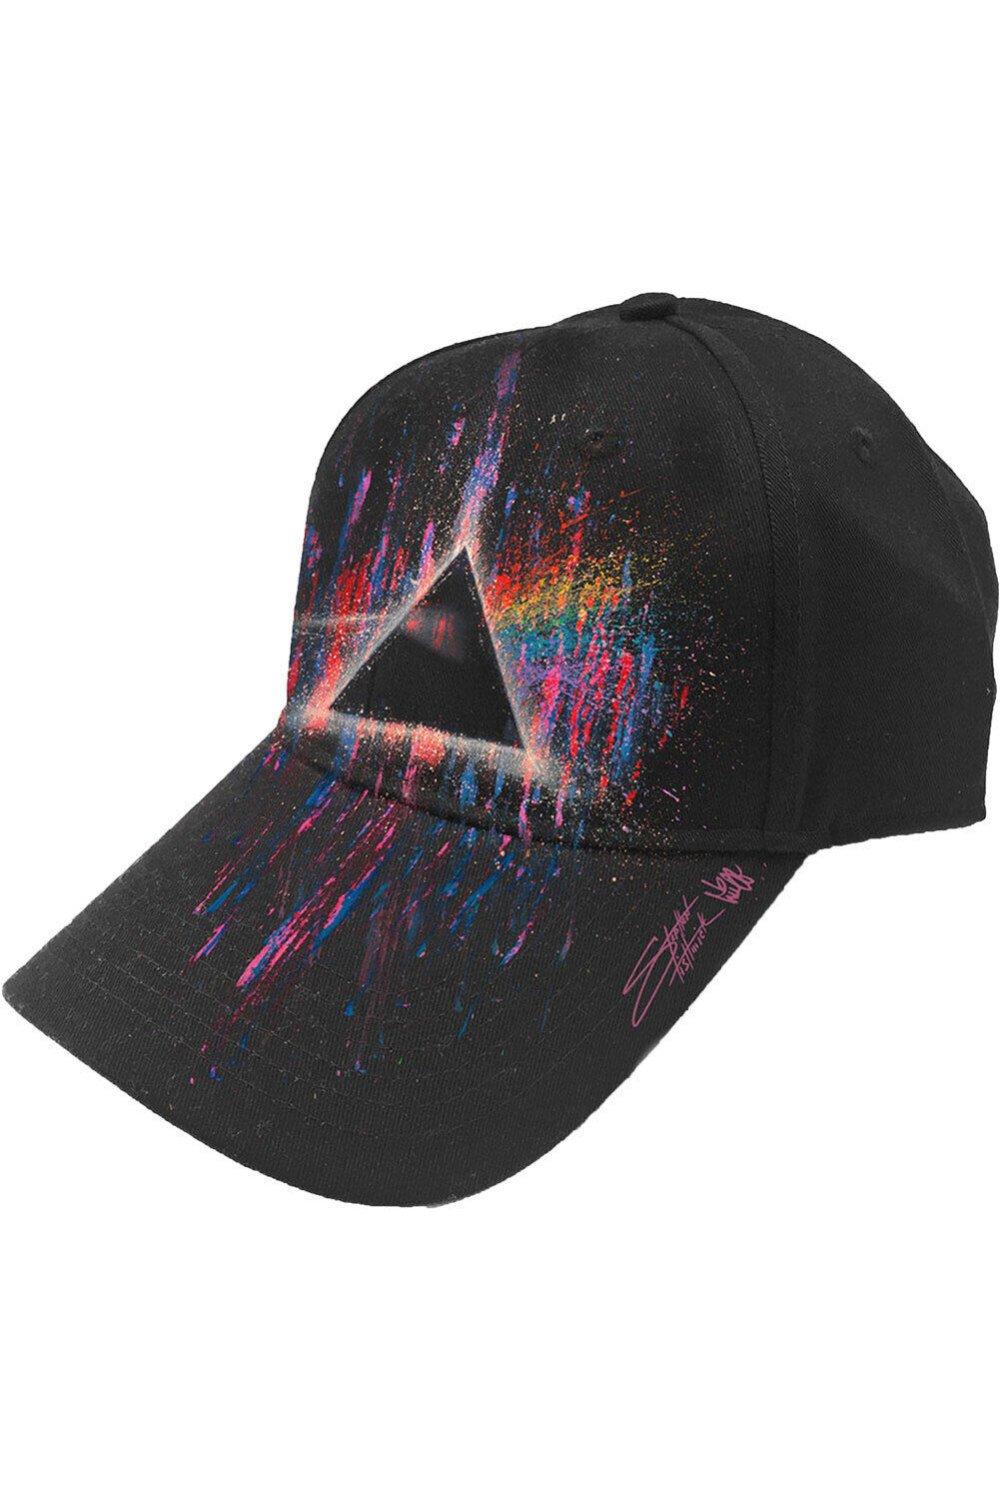 Бейсбольная кепка с брызгами краски Dark Side Of The Moon Pink Floyd, черный уф экспозиция для печатной платы и т д трафаретная печатная машина